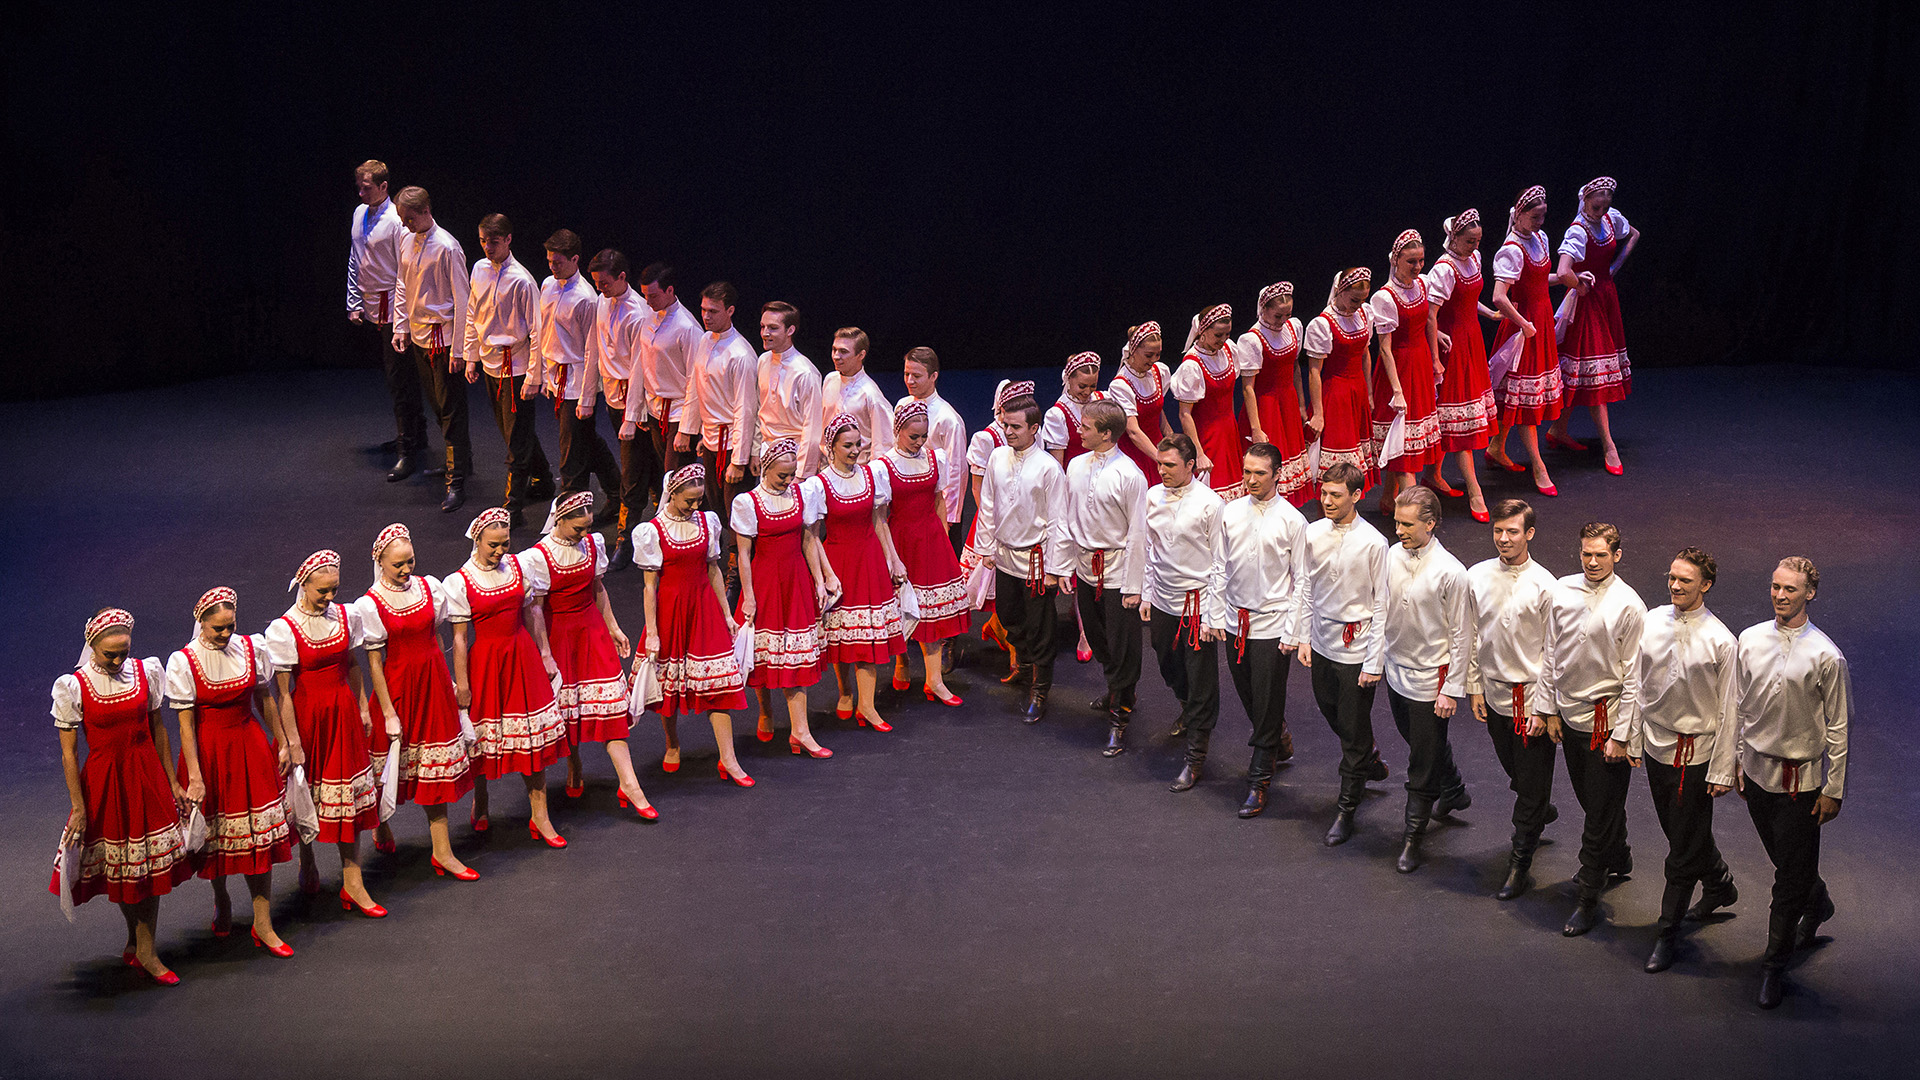 Русские народные танцы: танцовщицы в ярких национальных костюмах показывают потрясающие постановки с красивыми и сложными фигурами